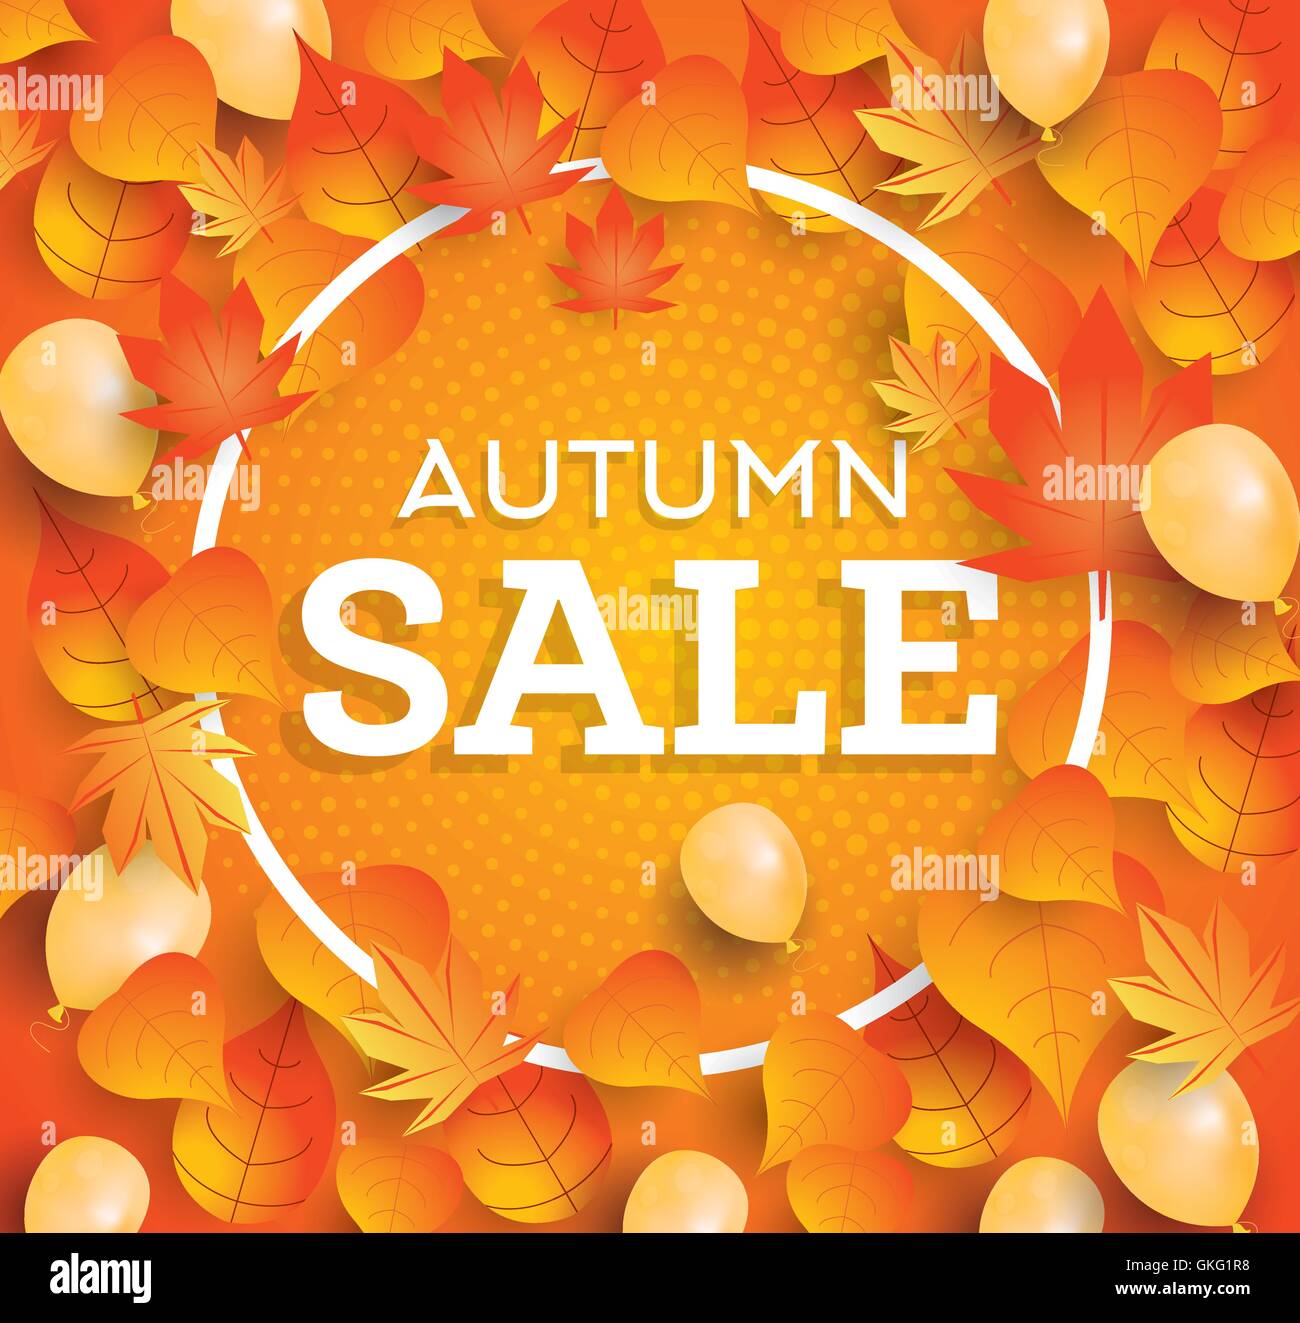 Herbst-Verkauf-Hintergrund mit fallenden Blätter und Luftballons. Vektor-Illustration. Stock Vektor